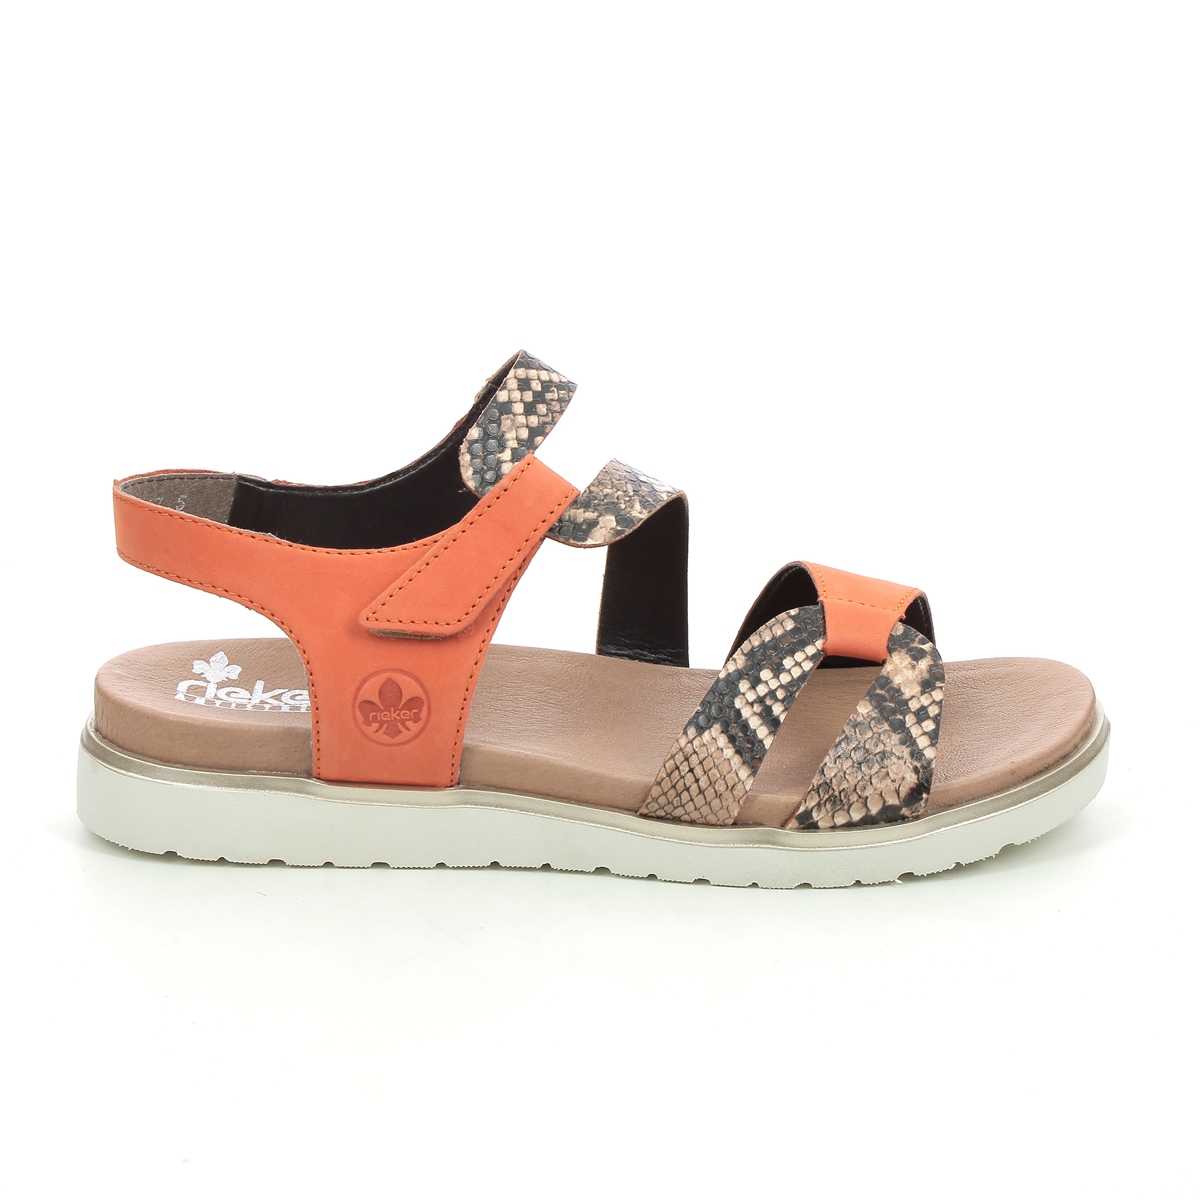 Ladies Rieker Sandals Deals, SAVE - online-pmo.com